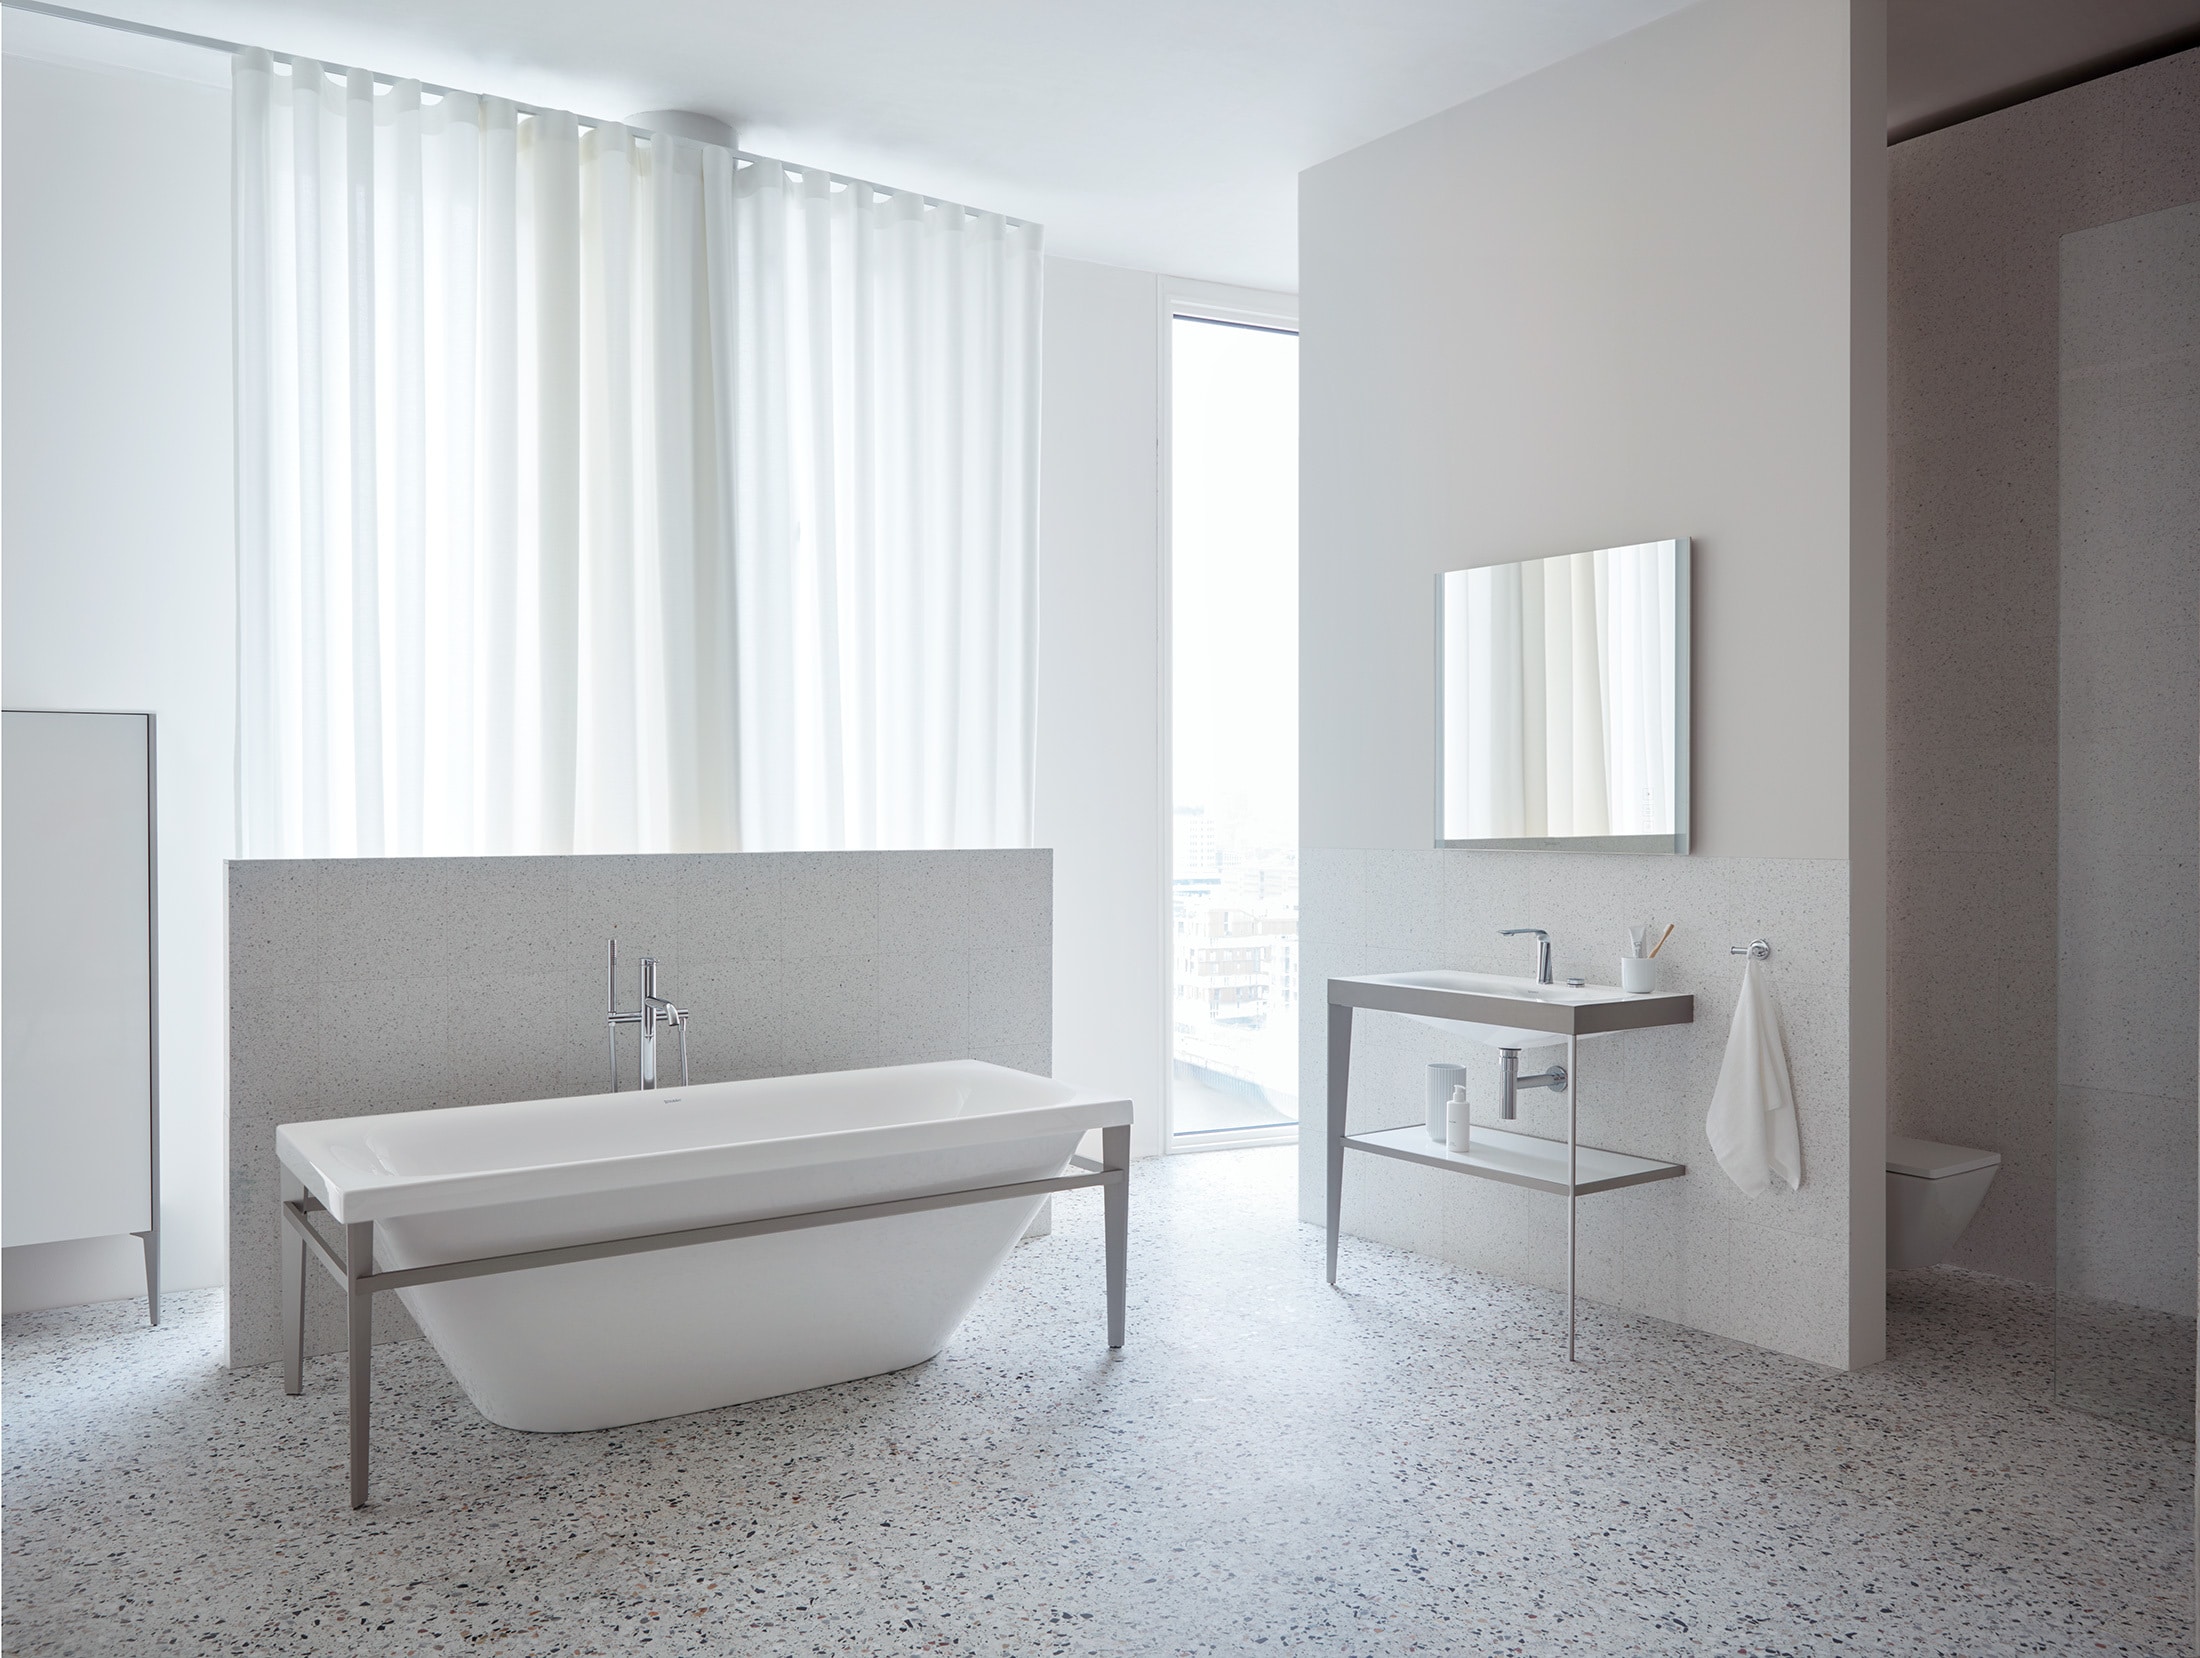 Duravit_Viu_XViu_bathtub_c-bonded_toilet_interior